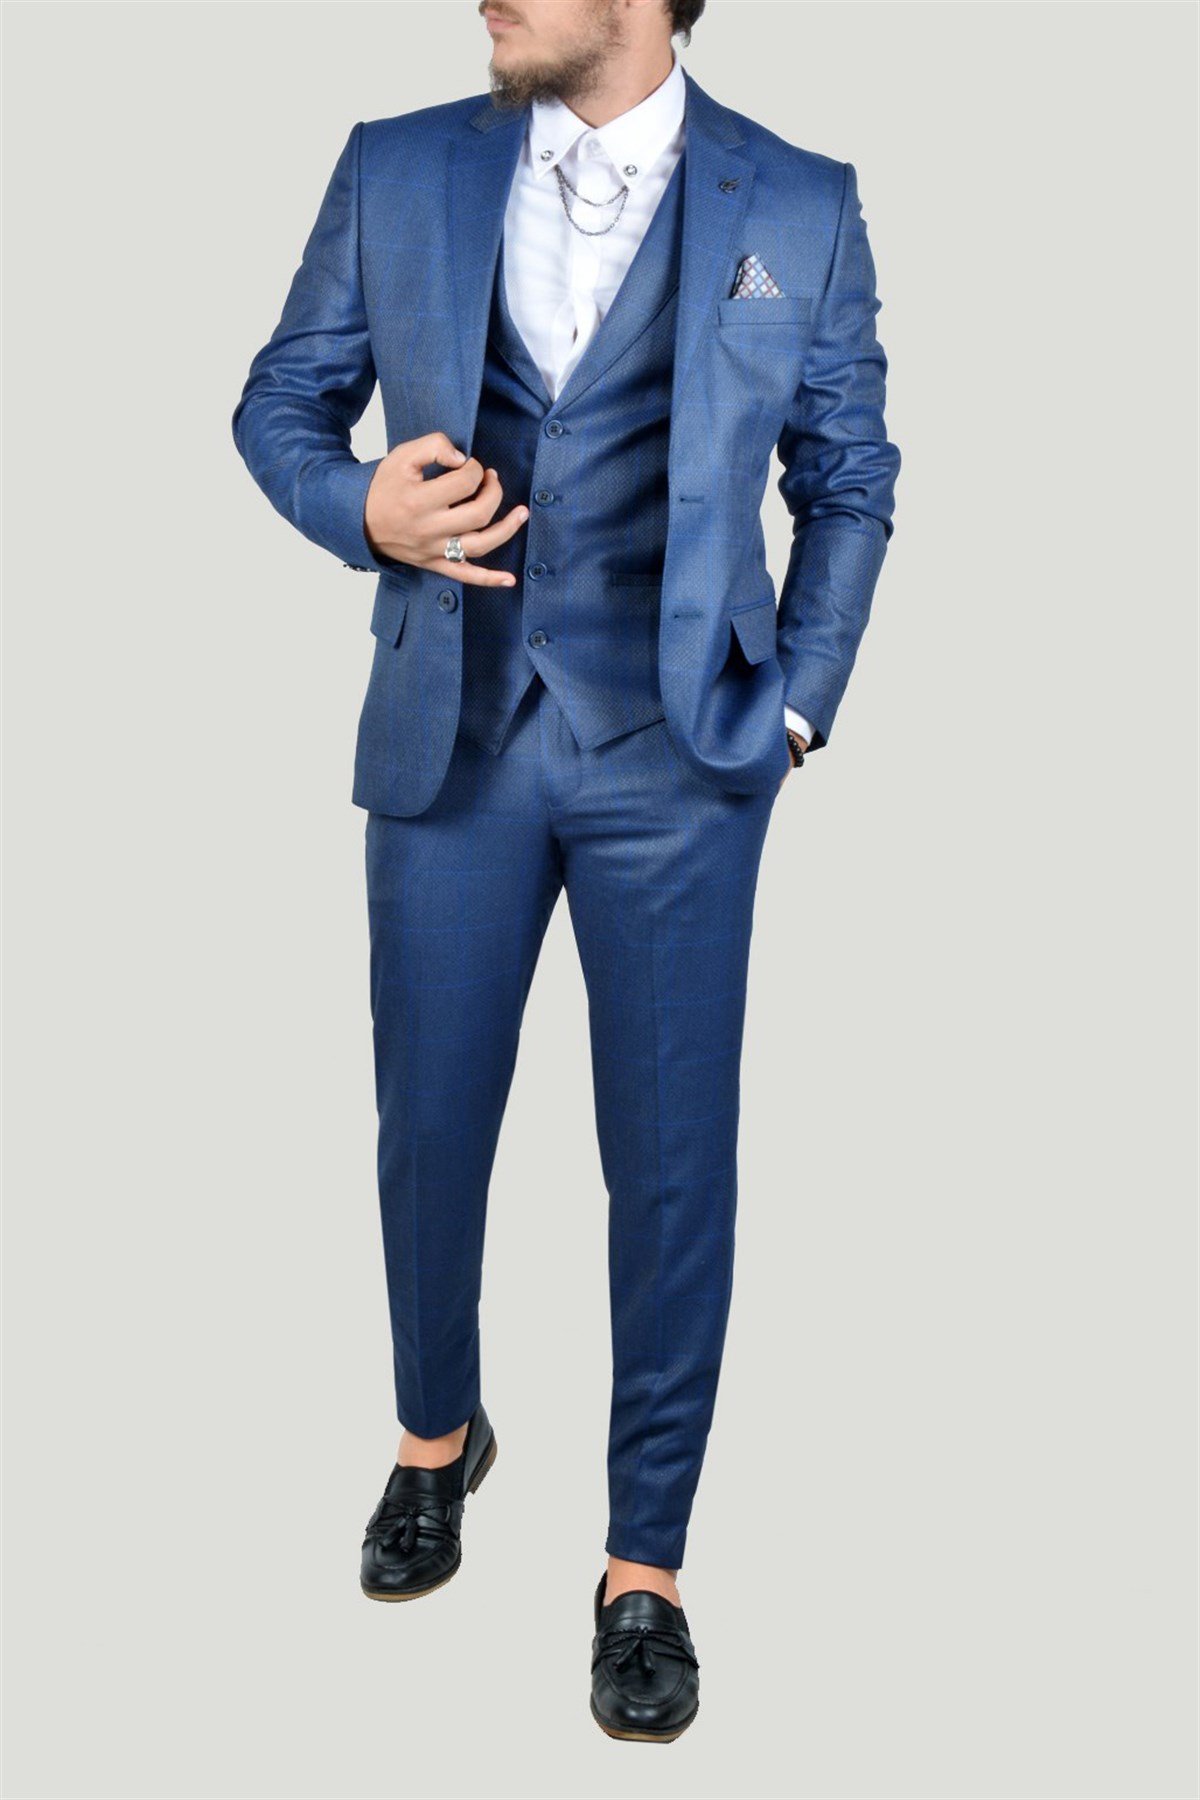 Erkek Takım Elbise 9K-40772-019 Koyu Mavi | Terapi Giyim